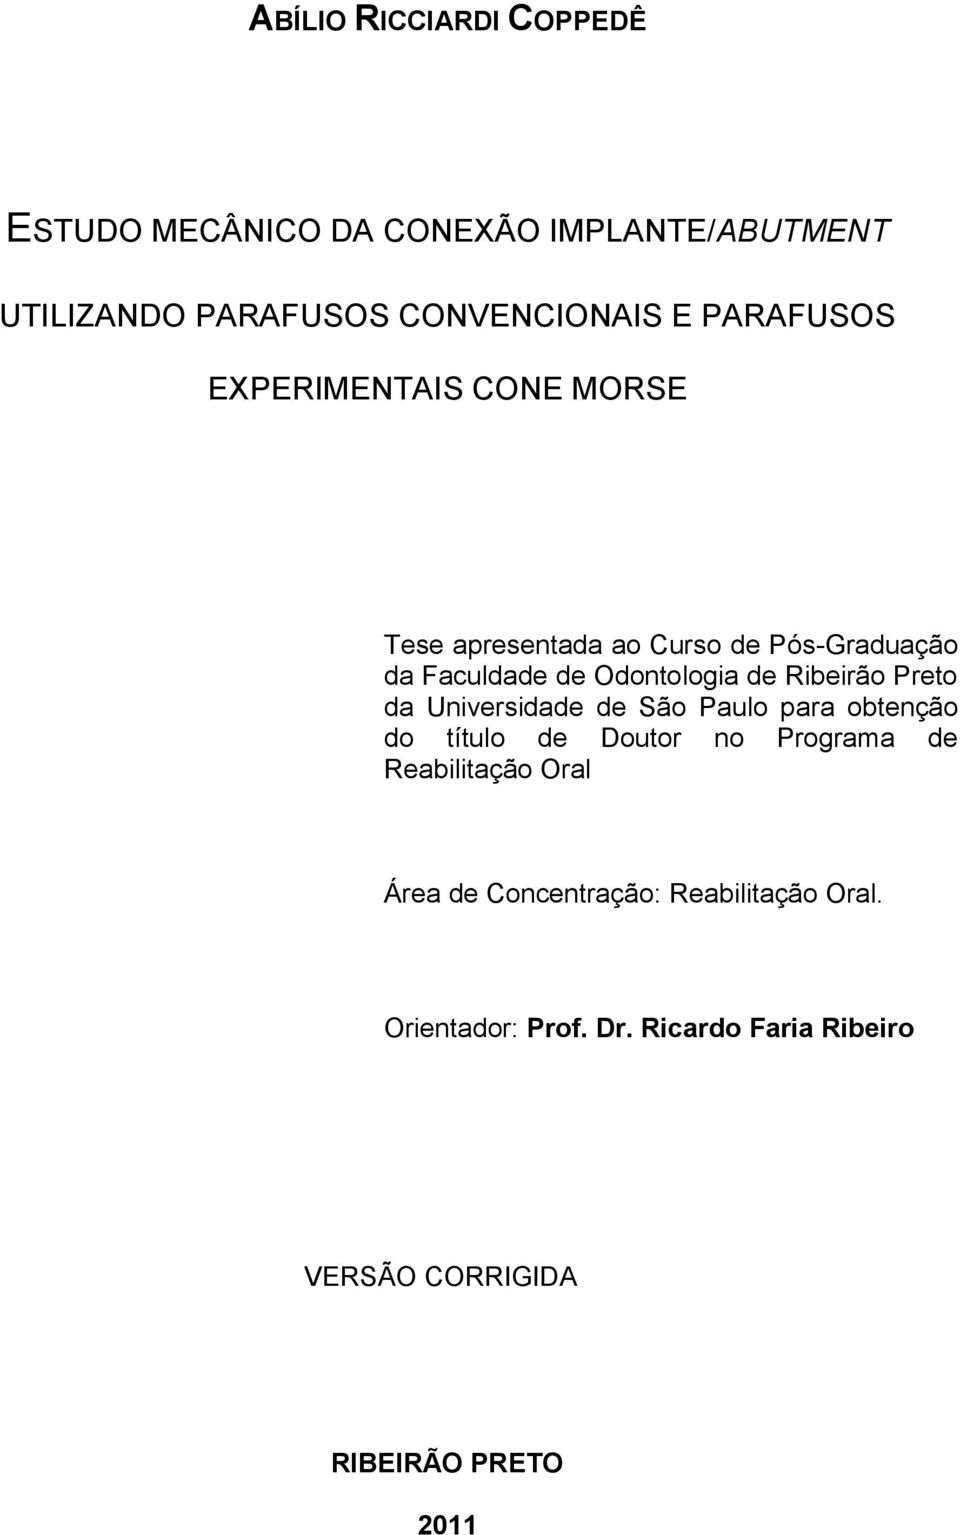 Ribeirão Preto da Universidade de São Paulo para obtenção do título de Doutor no Programa de Reabilitação Oral